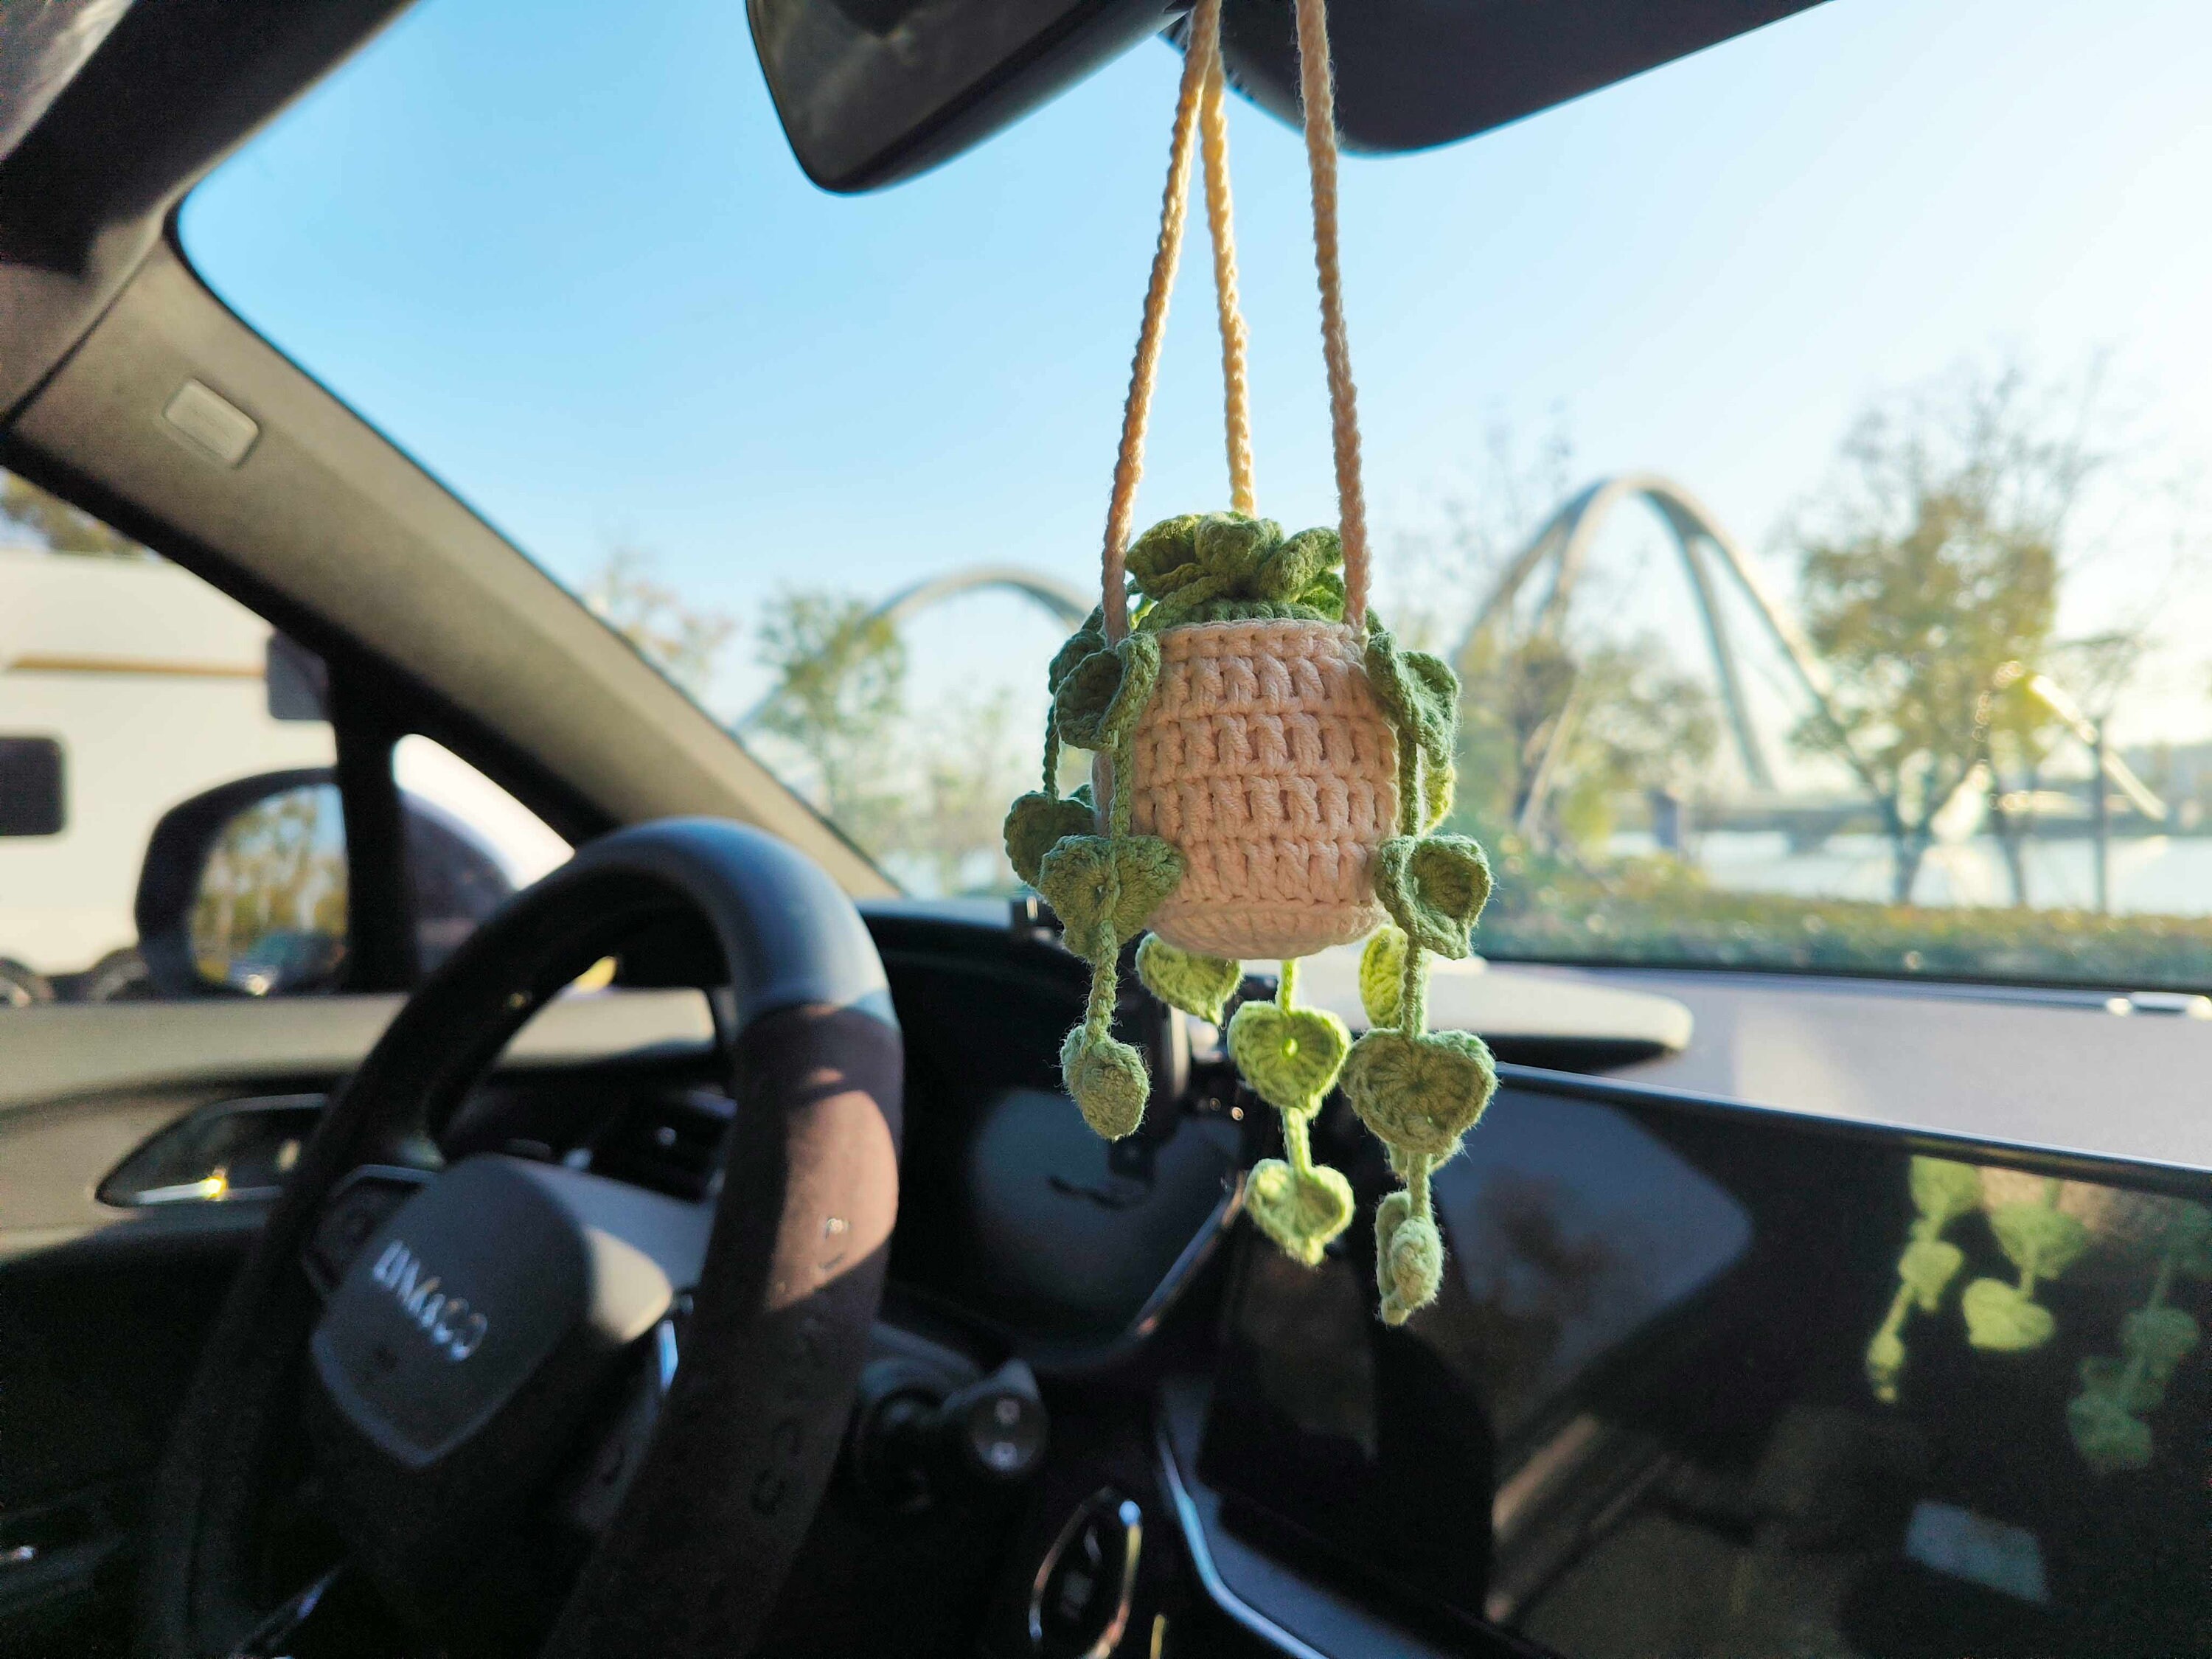 Handmade Crochet Swing Specter Animal Car Mirror, Hanging Flower Decor,  Teens Interior Rear View Mir on Luulla